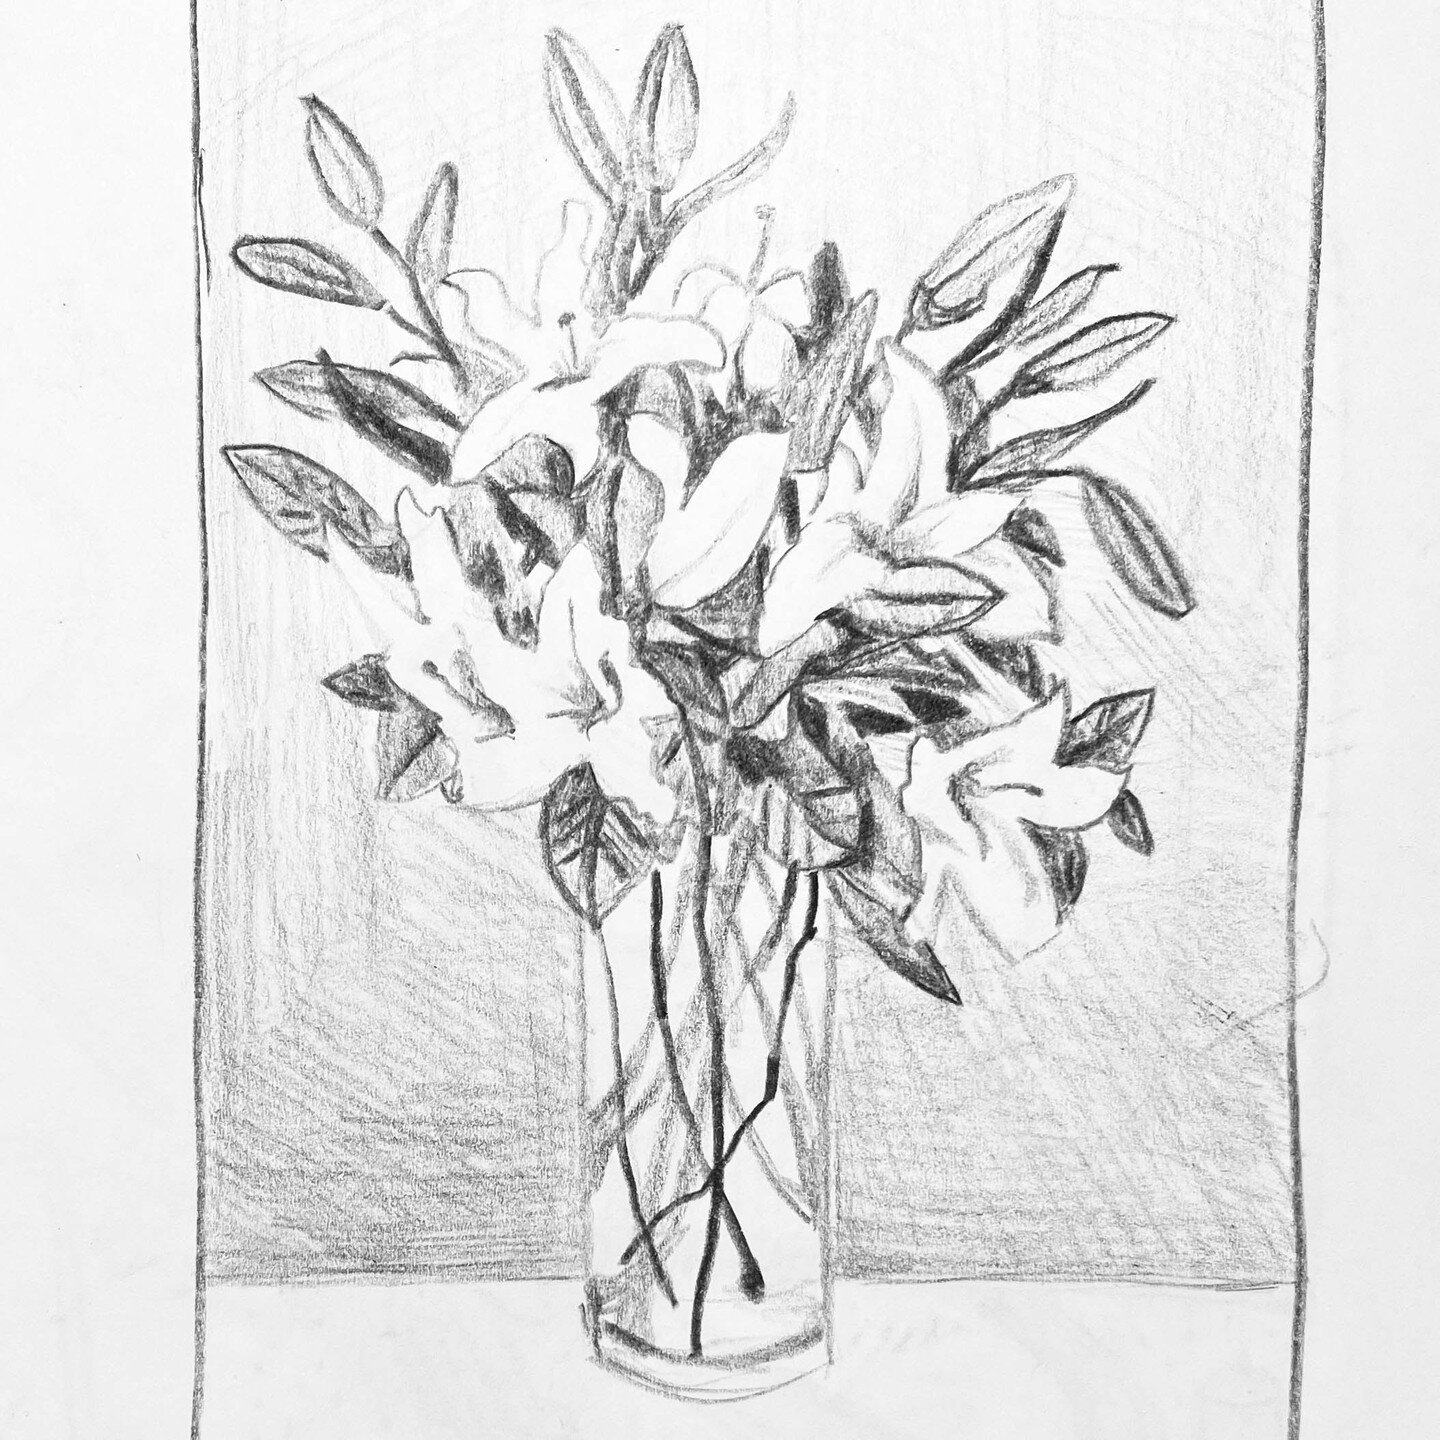 Sketchbook peek! ⁠
Flowers in a vase⁠
⁠
⁠
#sketch #sketchbook #drawing #artoftheday #doodle